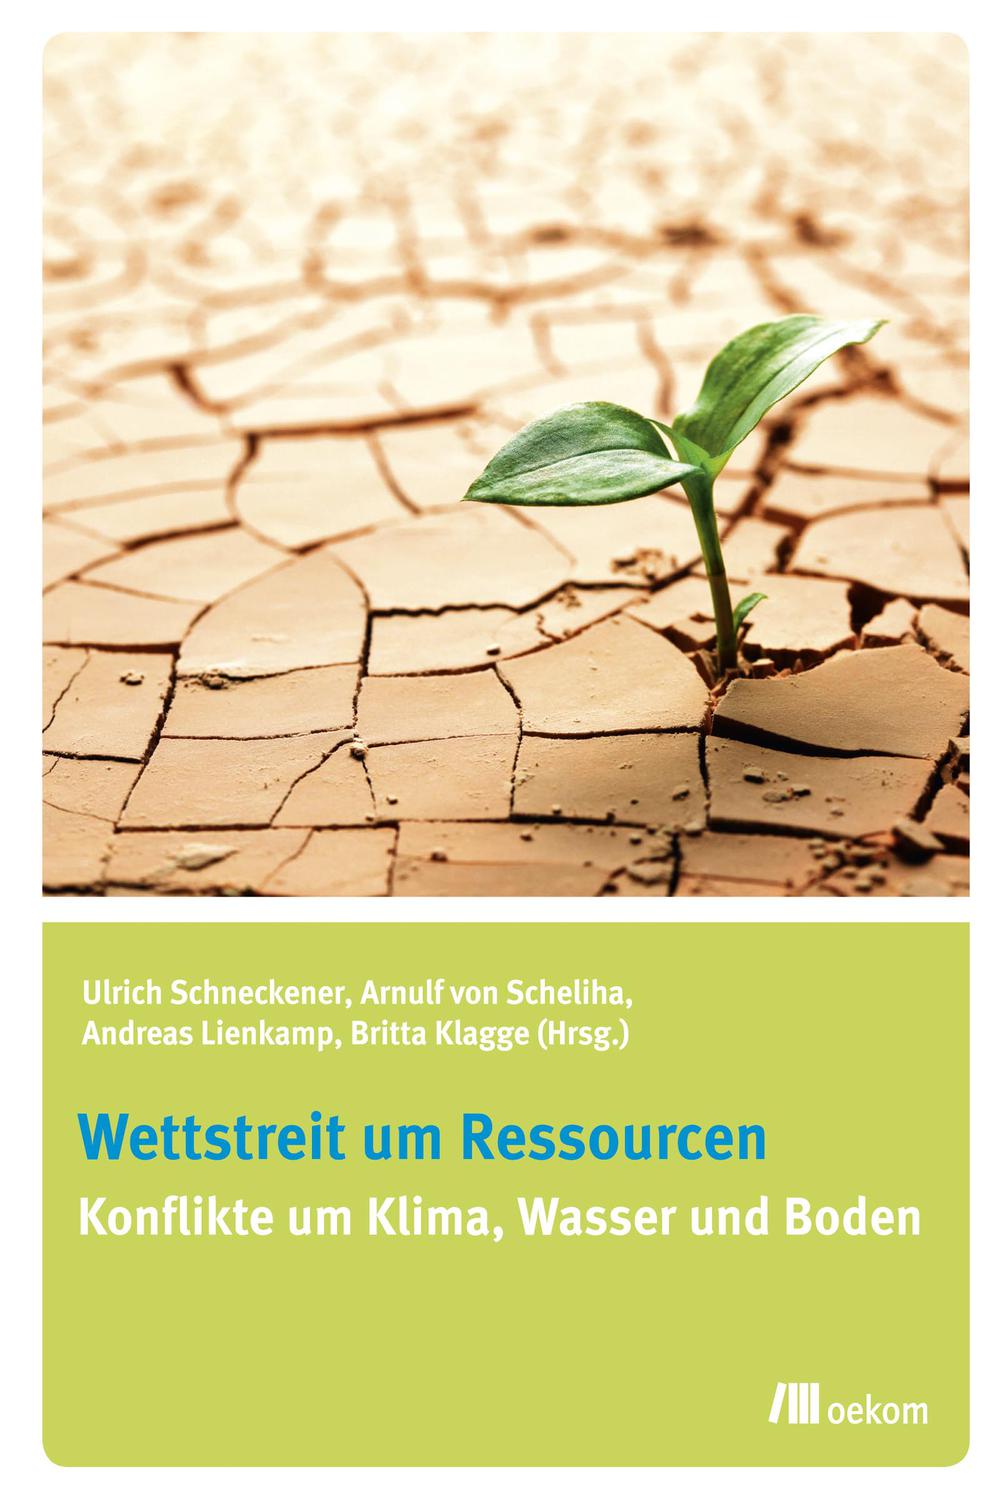 Wettstreit um Ressourcen - Britta Klagge, Andreas Lienkamp, Arnulf von Scheliha, Ulrich Schneckener